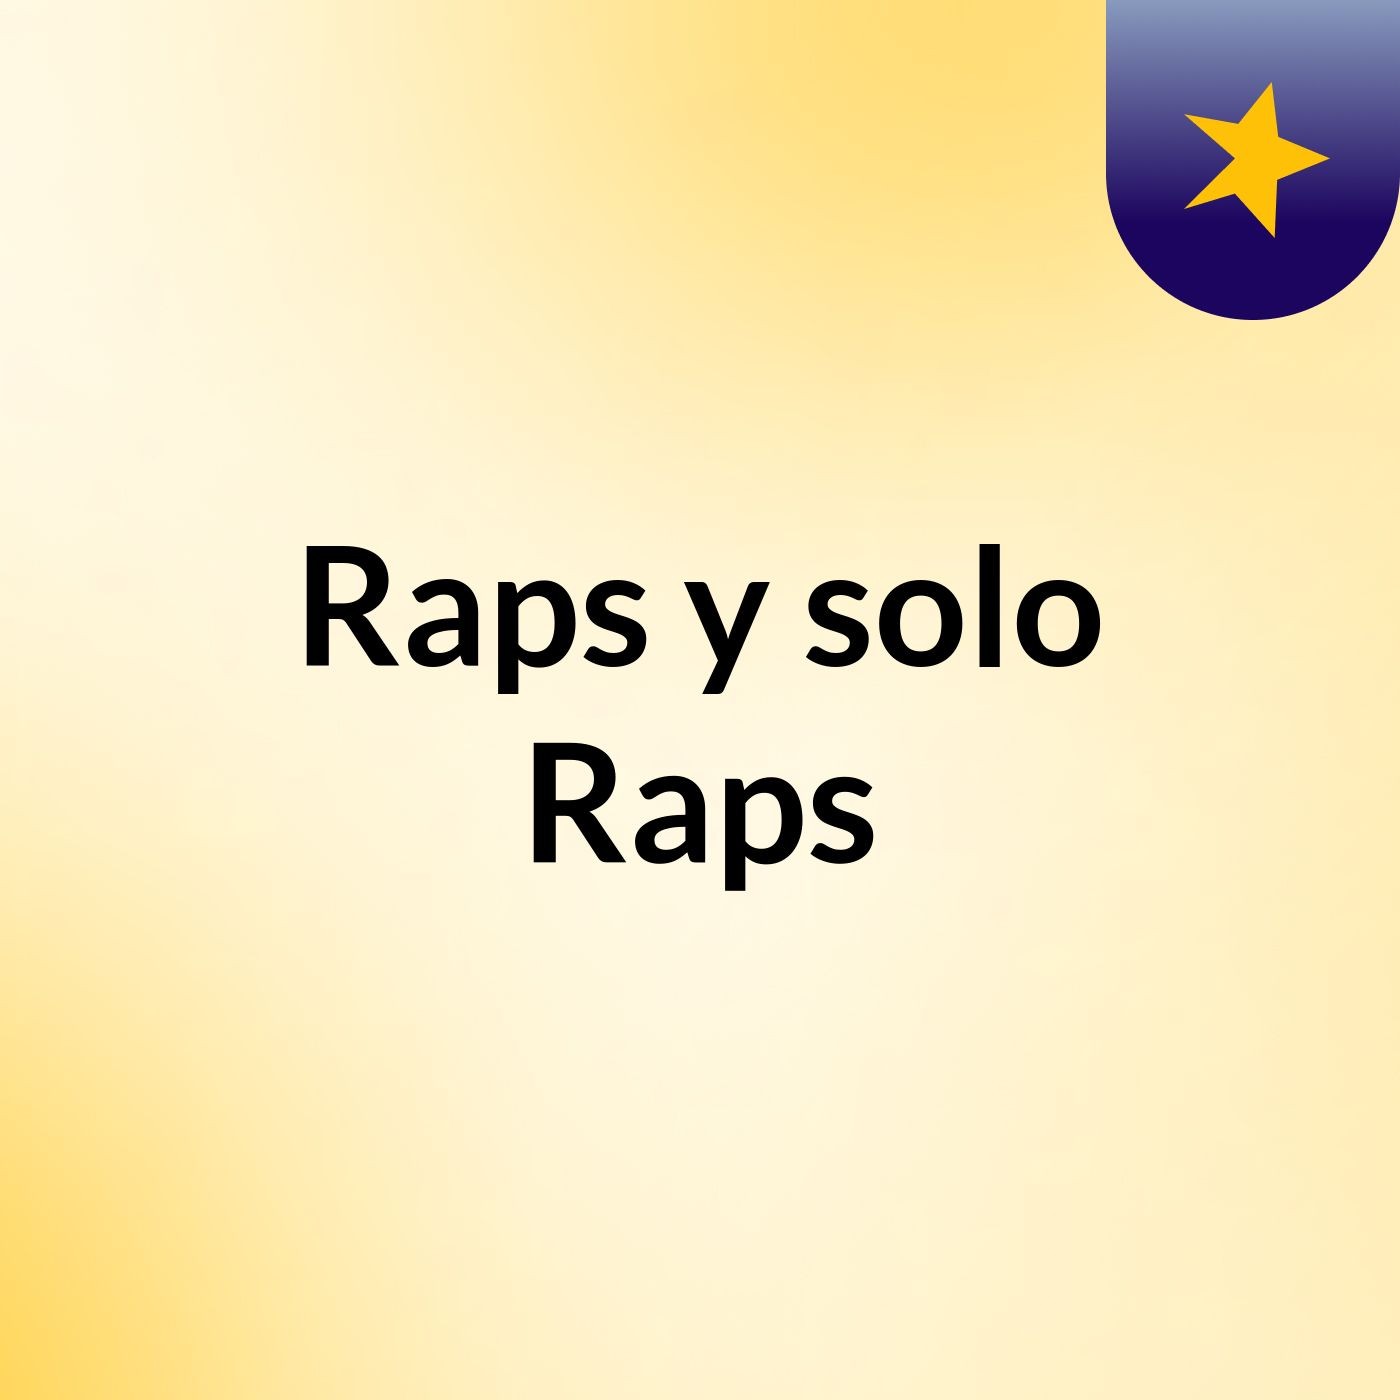 Raps y solo Raps